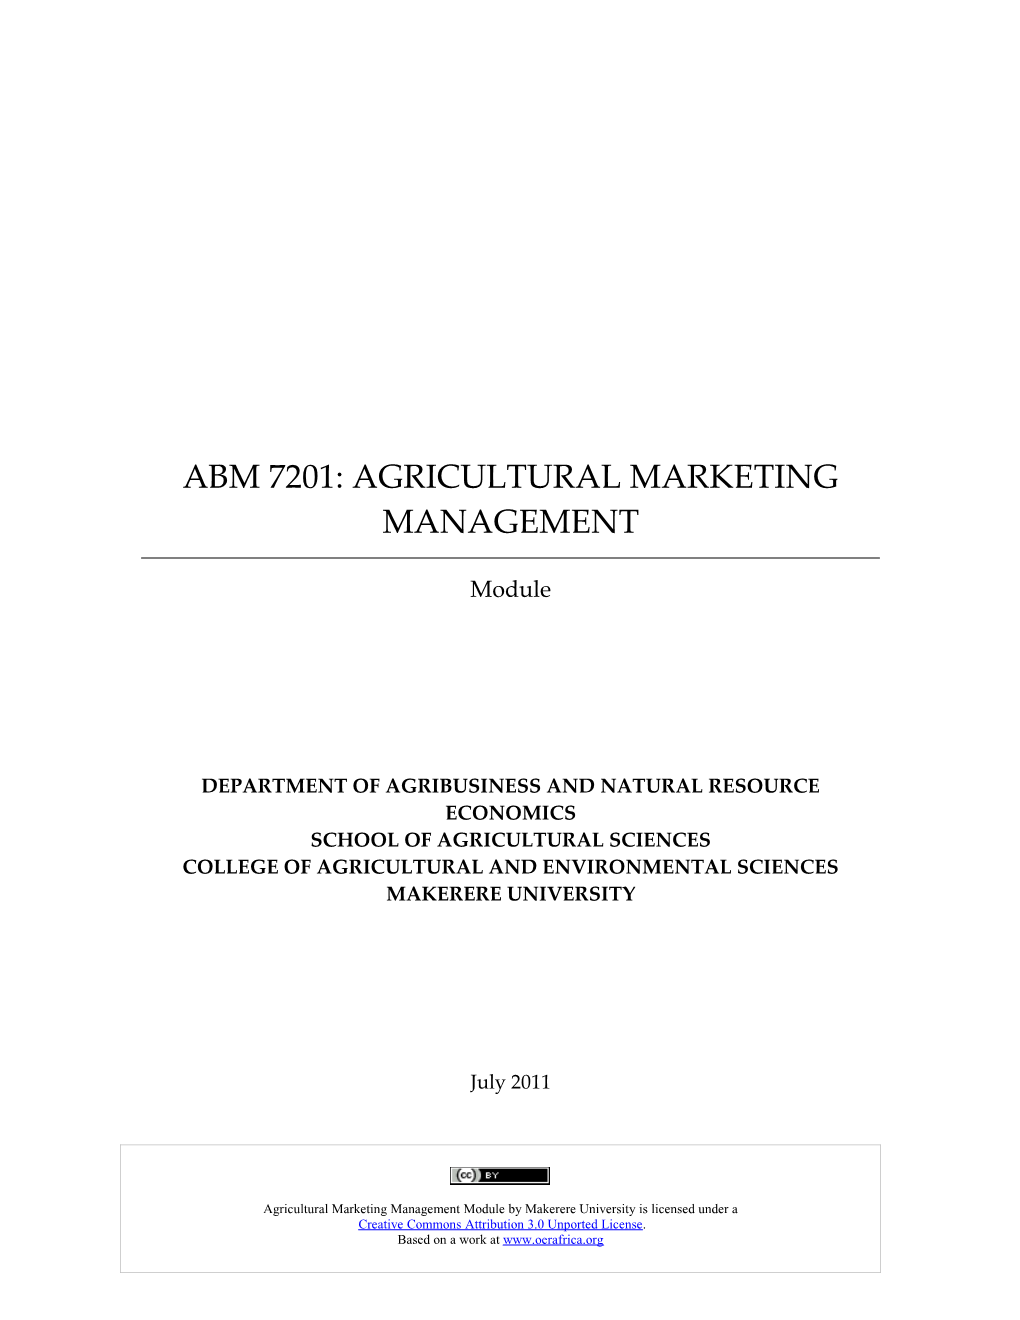 Abm 7201: Agricultural Marketing Management